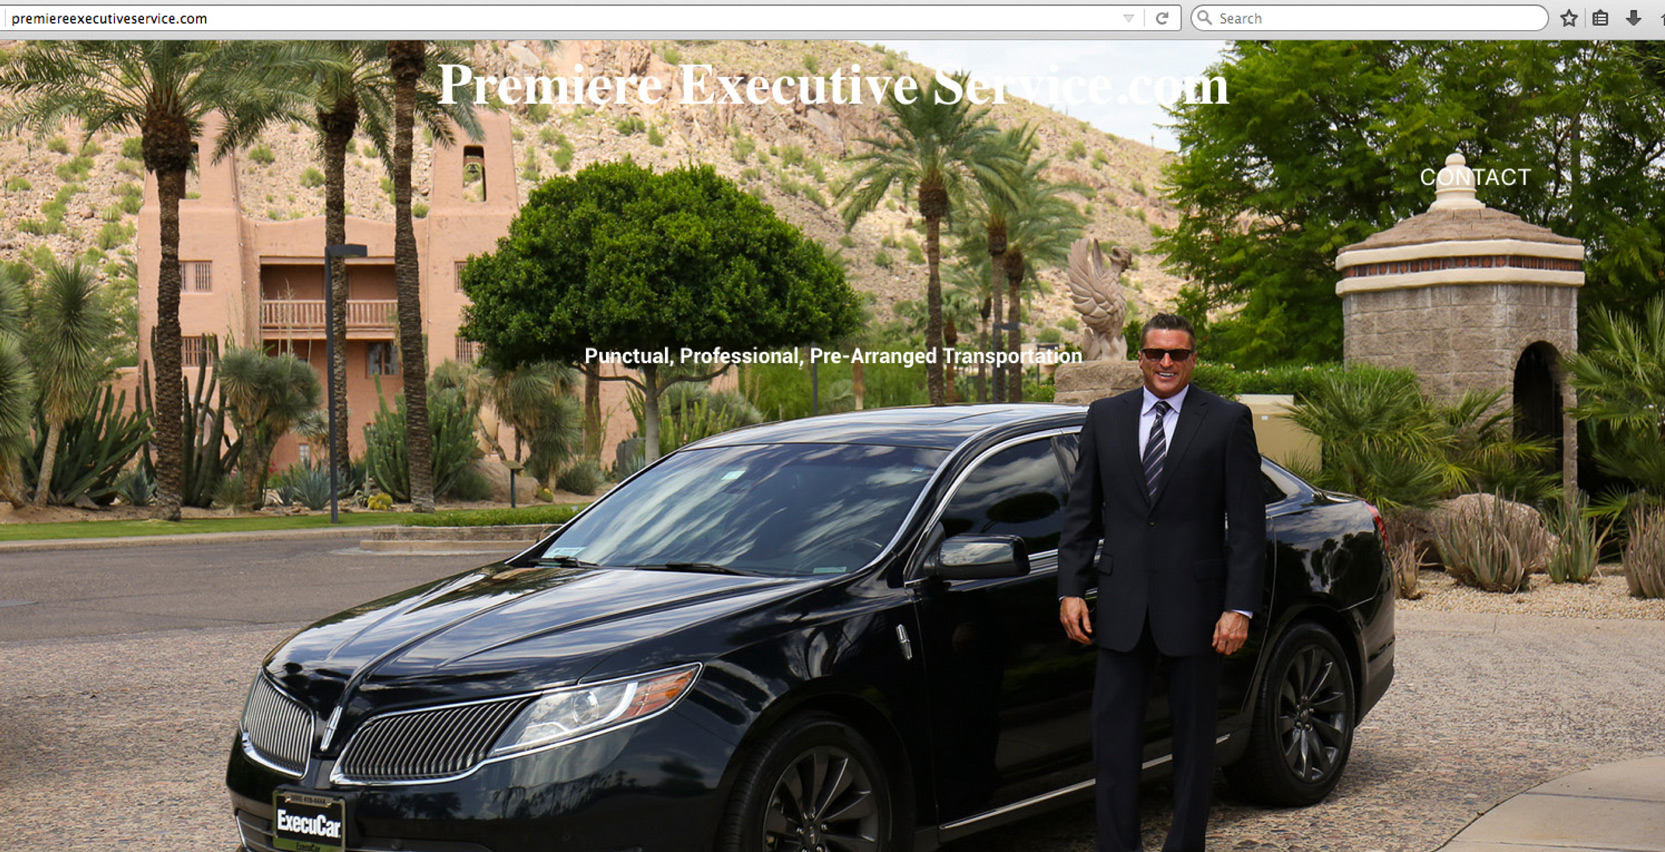 Premiere Executive Services